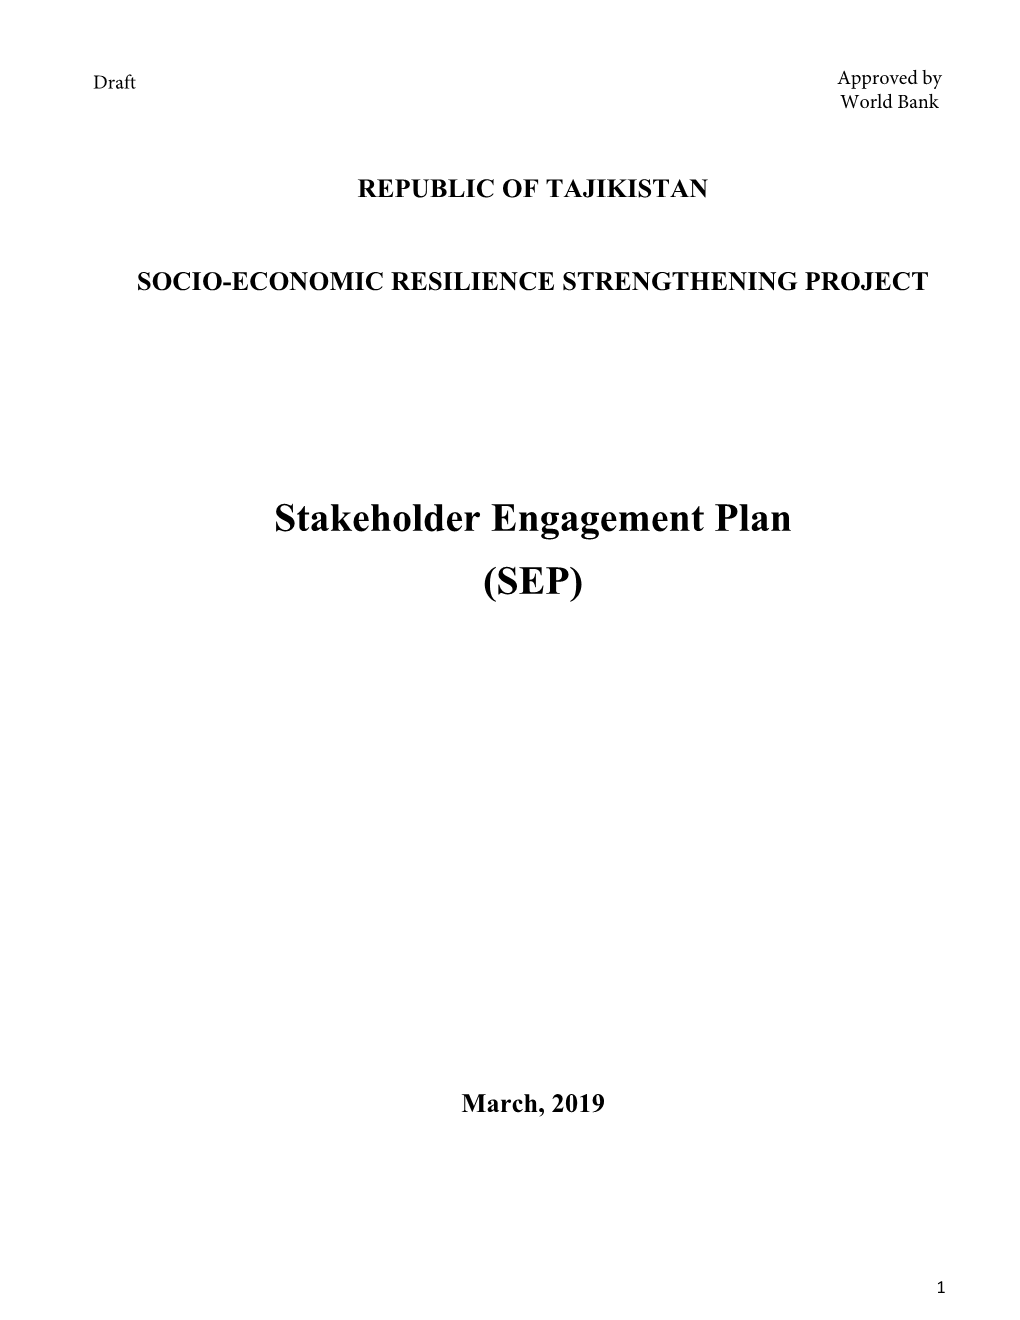 Stakeholder Engagement Plan (SEP)